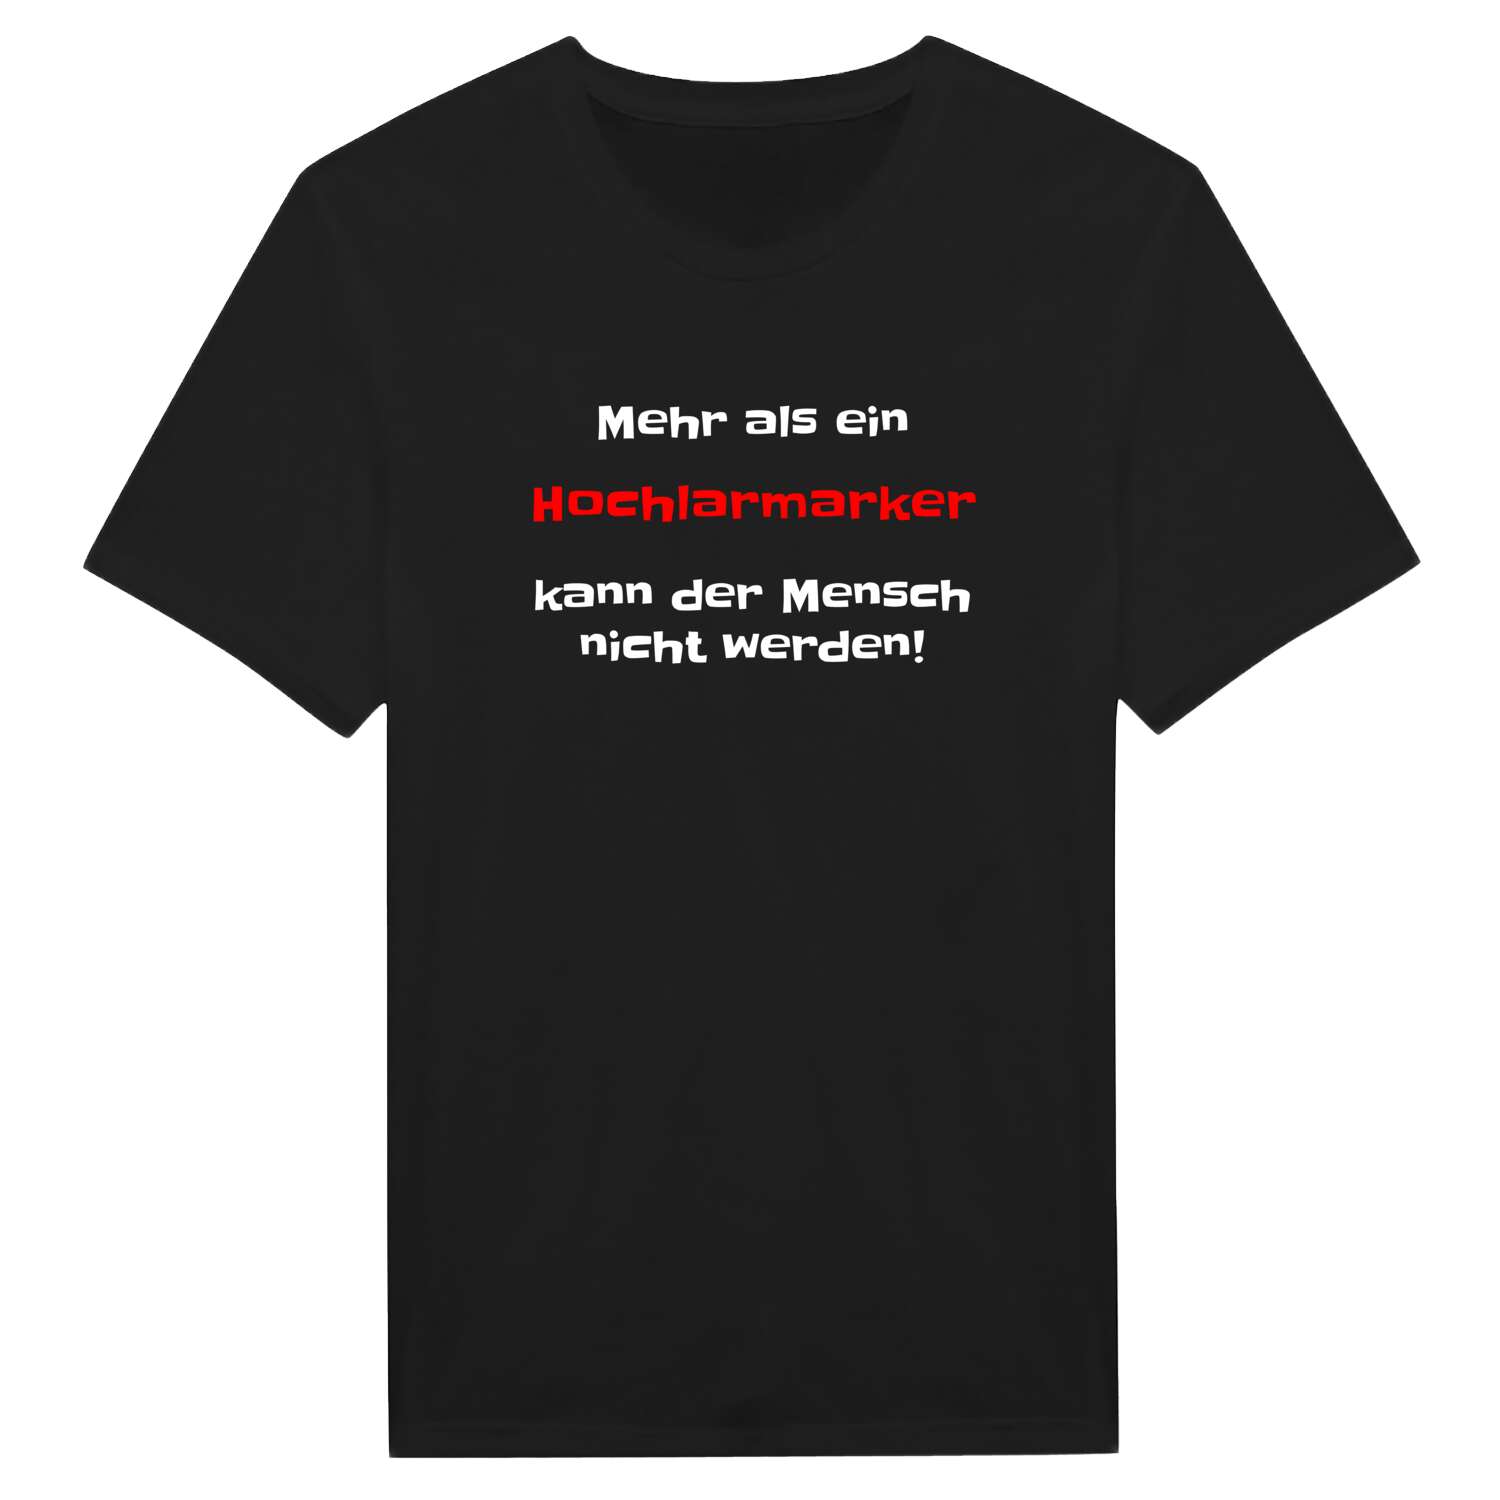 Hochlarmark T-Shirt »Mehr als ein«